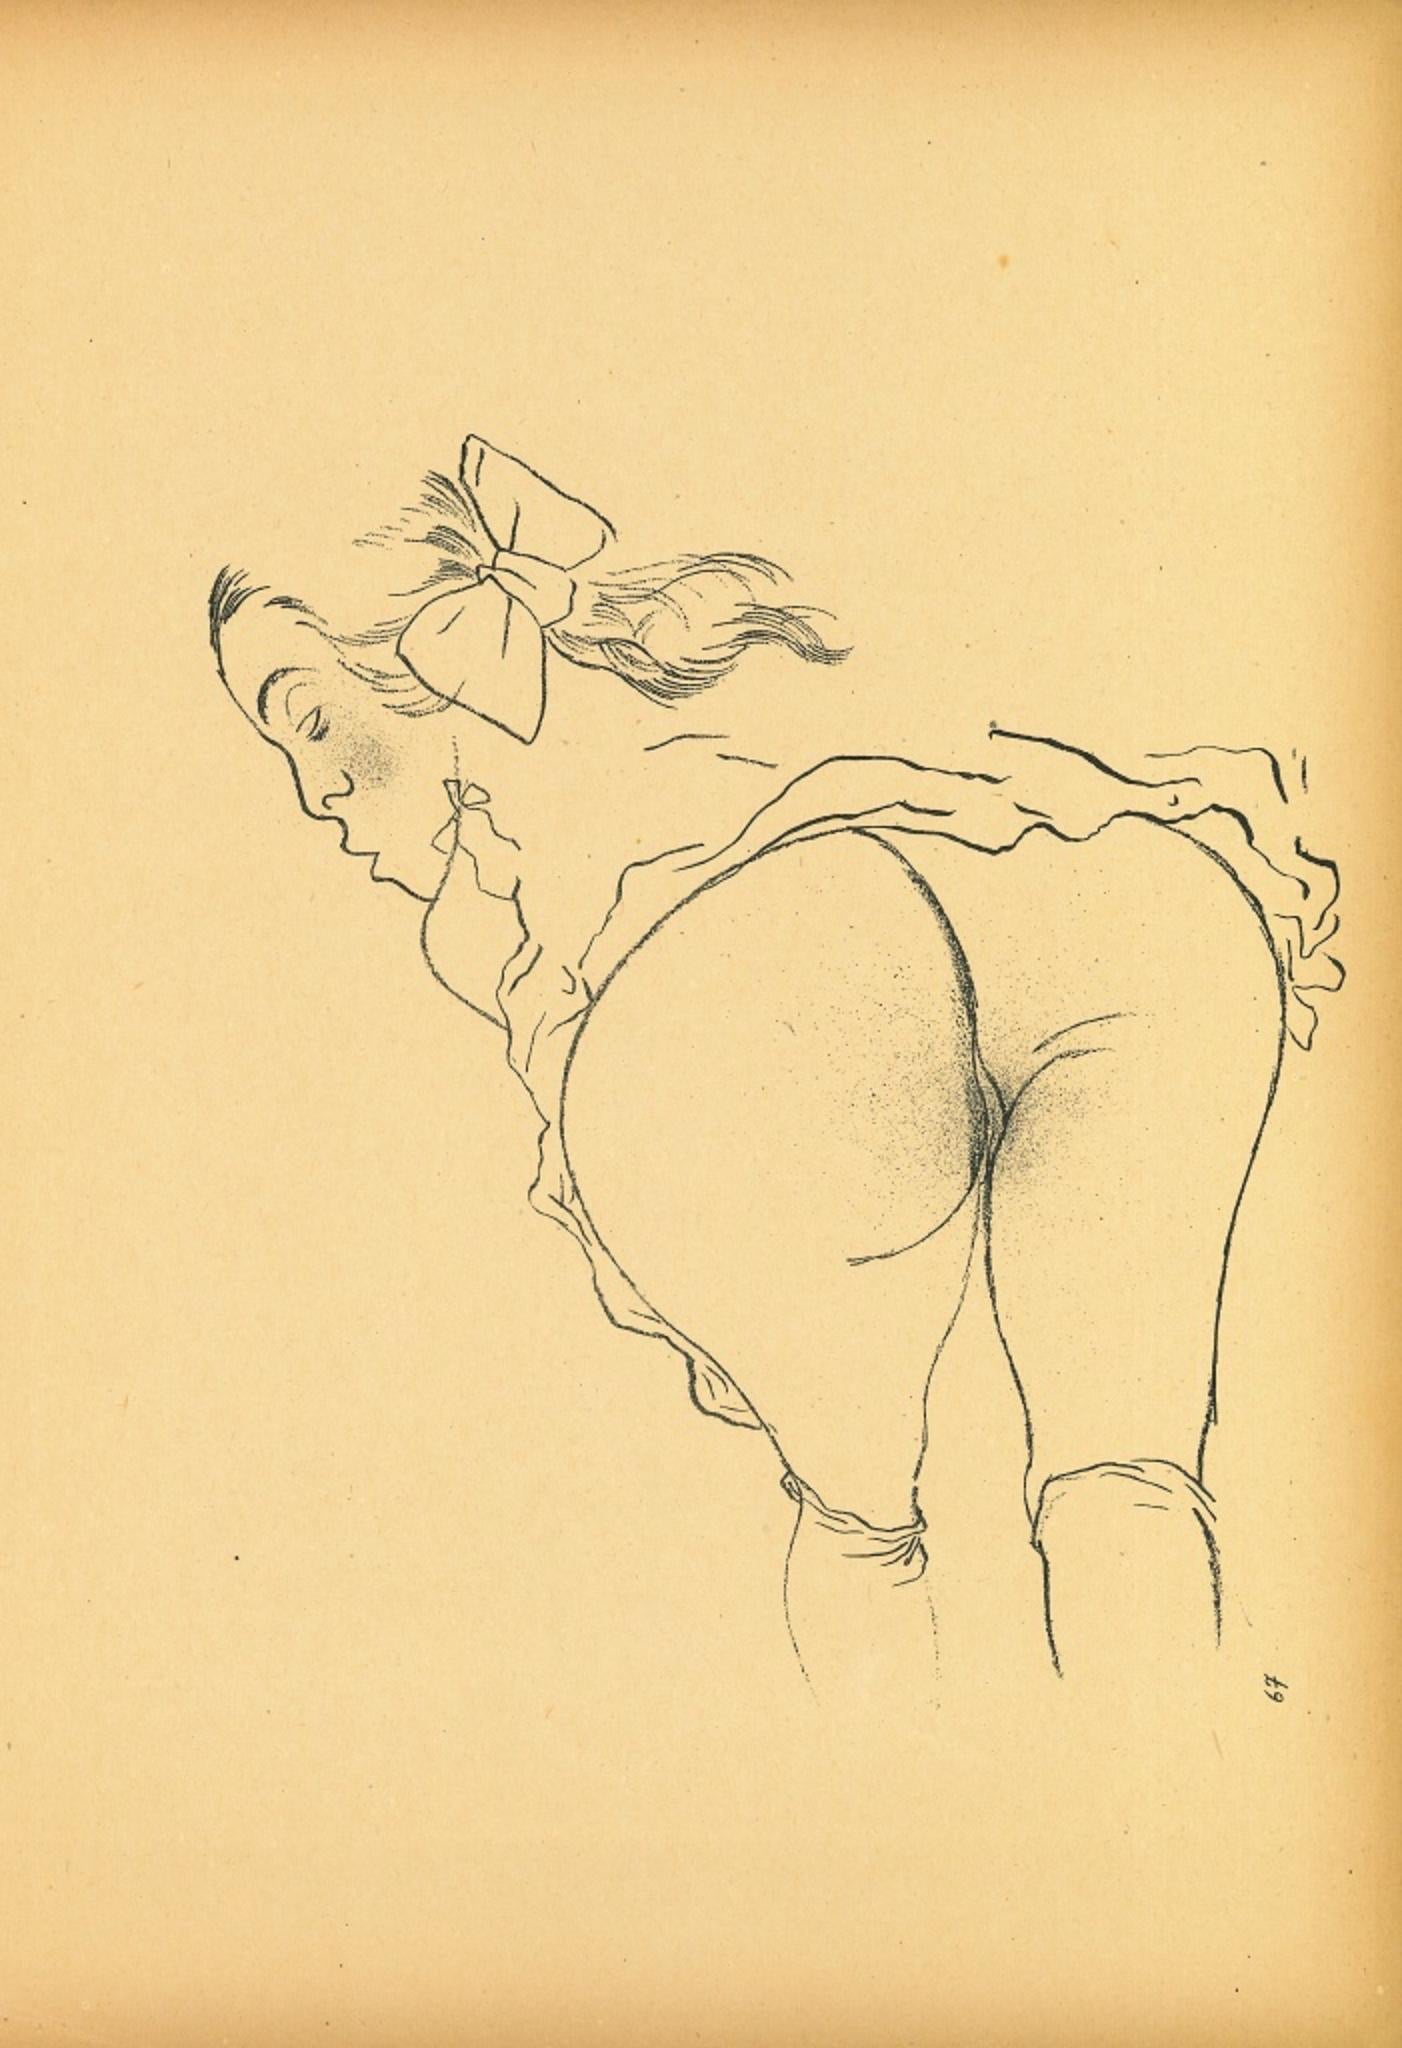 Alone from Ecce Homo ist eine Original-Offset- und Lithografie, die von George Grosz realisiert wurde.

Bei dem Kunstwerk handelt es sich um die Tafel Nr. 67 aus der 1922/1923 erschienenen Mappe Ecce Homo aus dem Malik-Verlag Berlin.

Auf der Platte